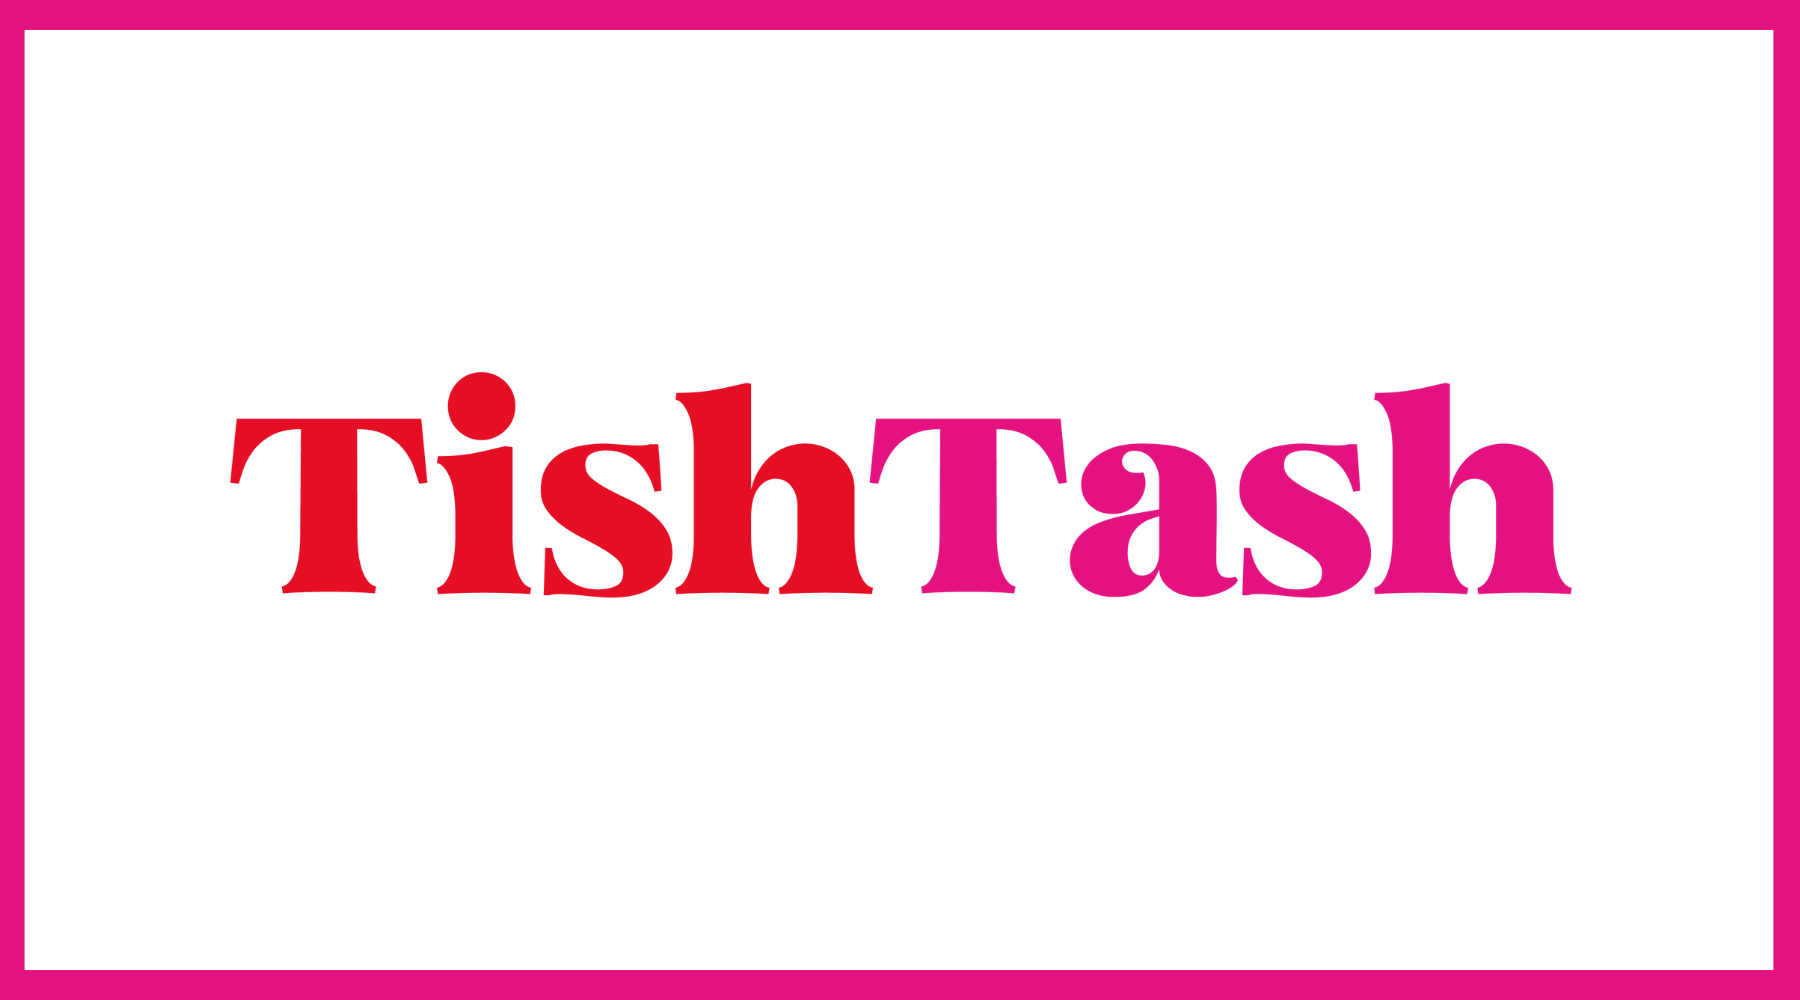 TishTash Communications Expands To The UK